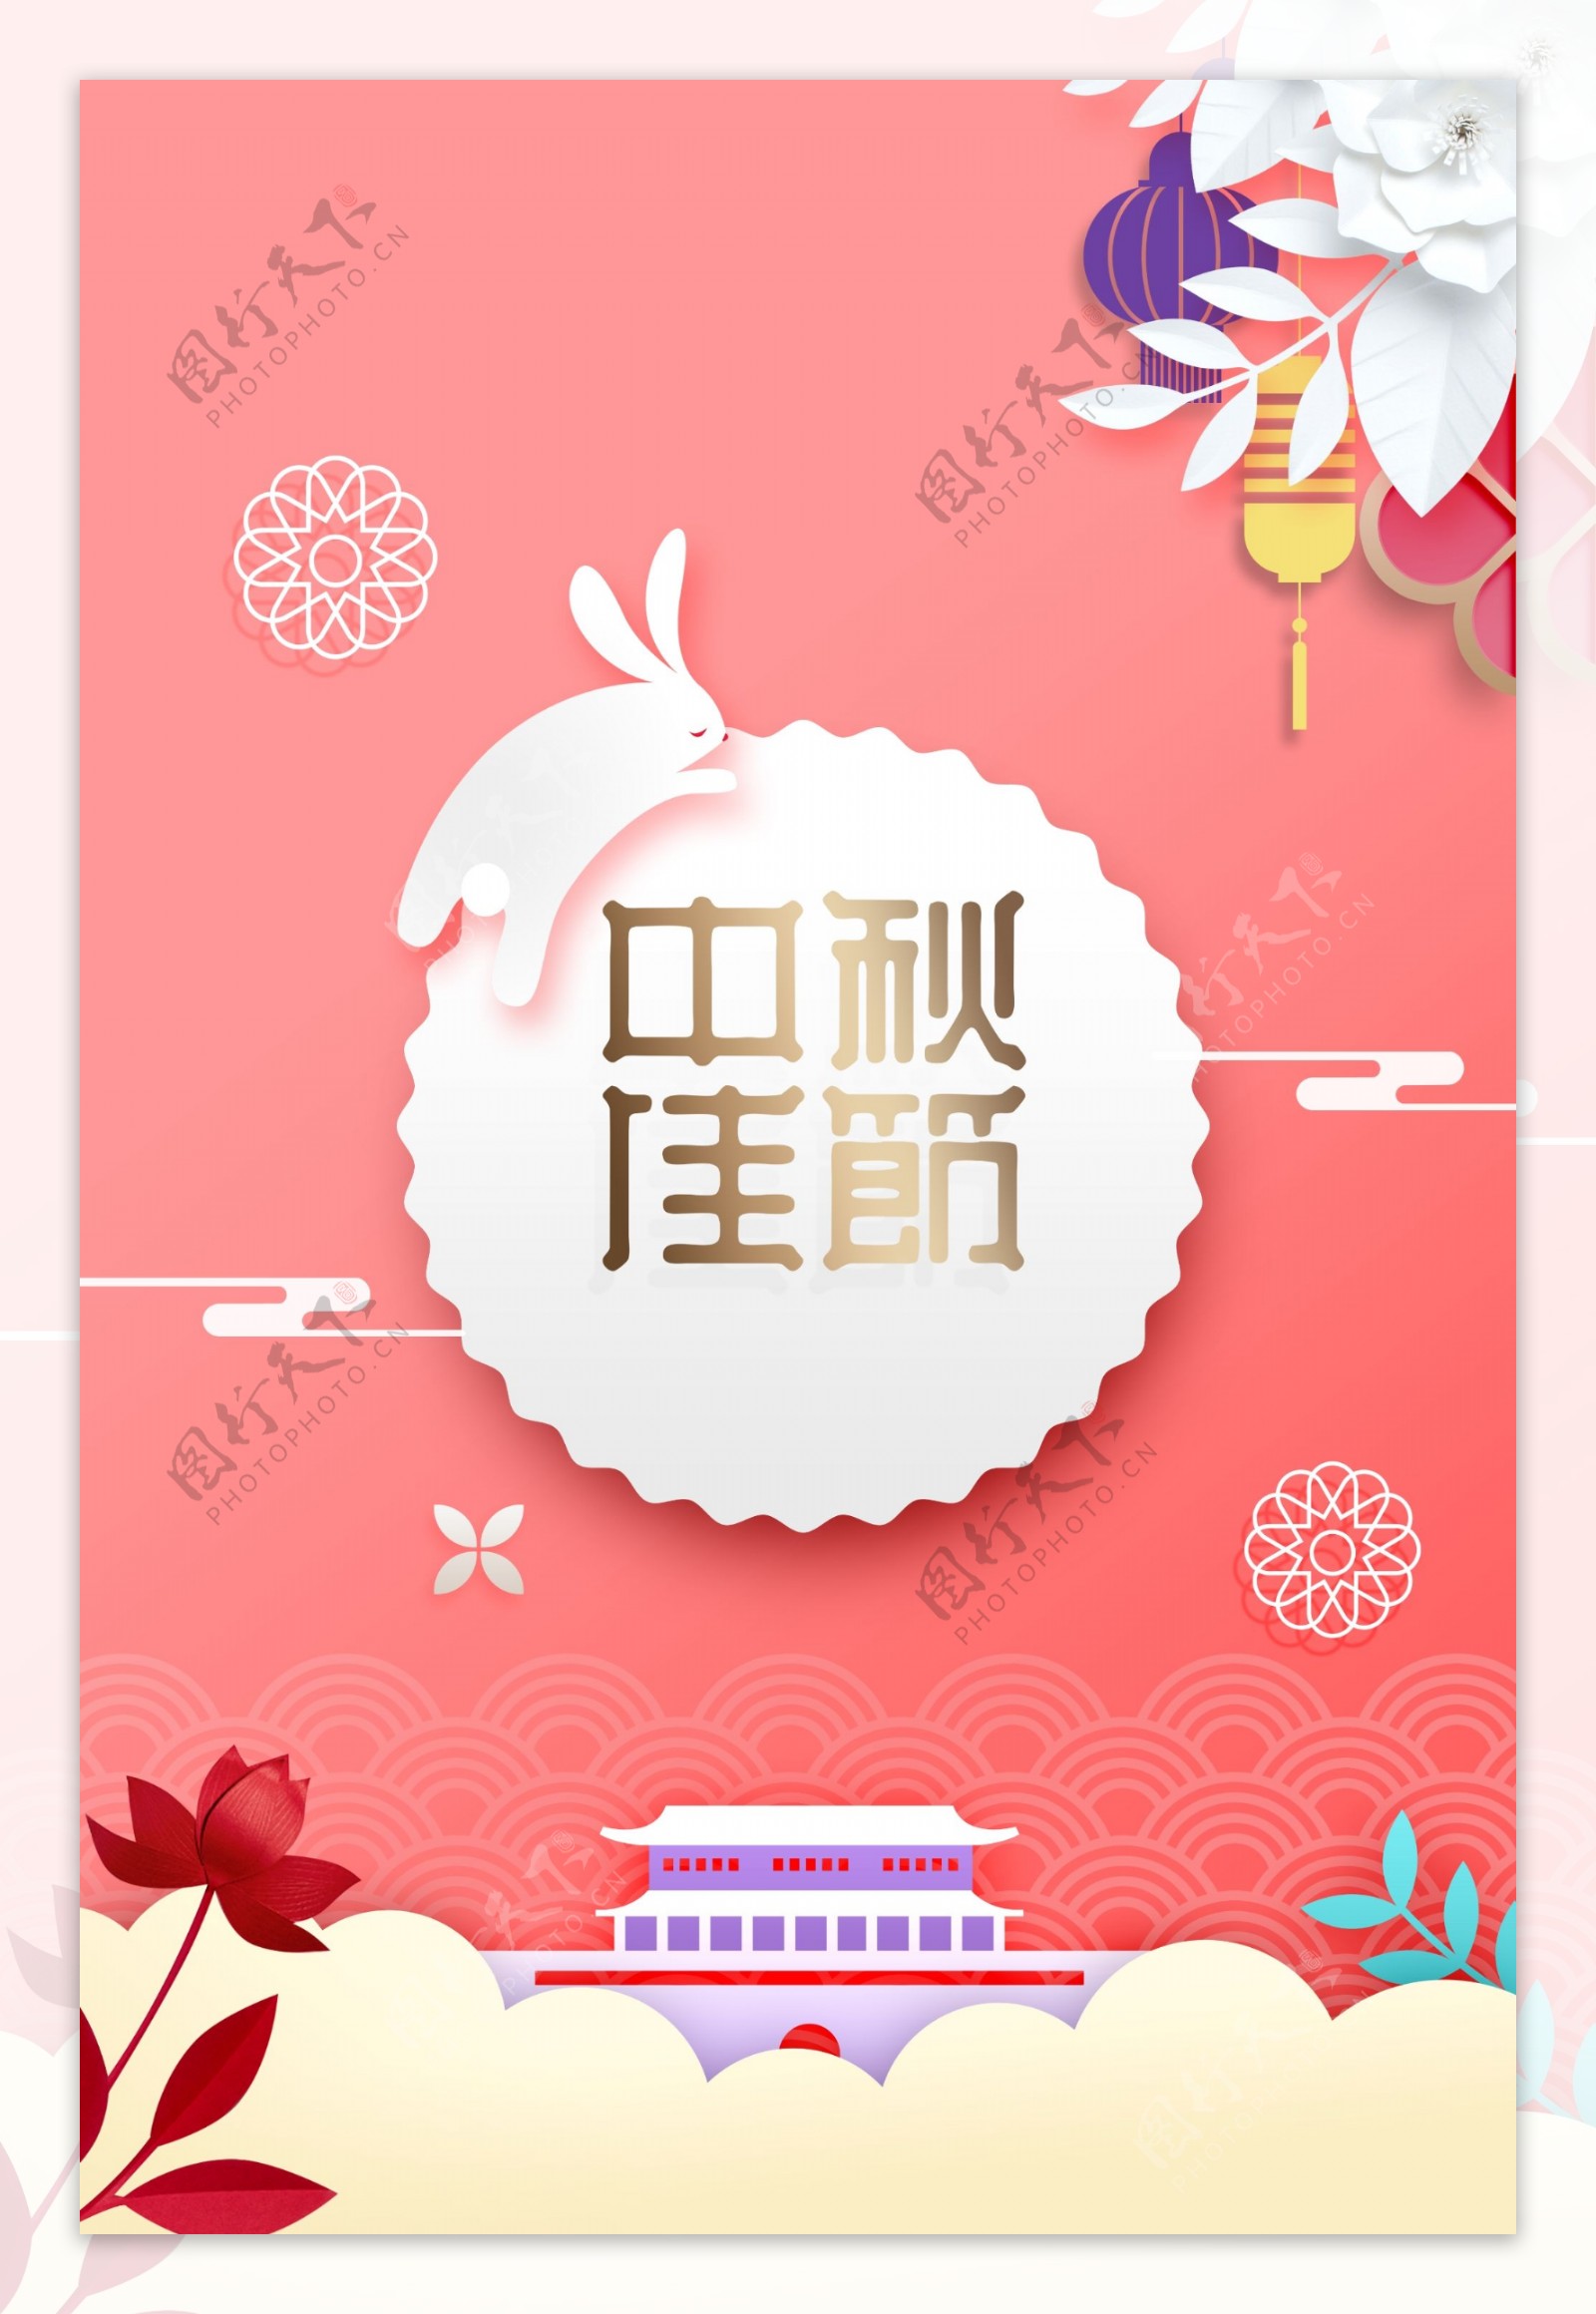 中秋佳节传统节日促销宣传海报